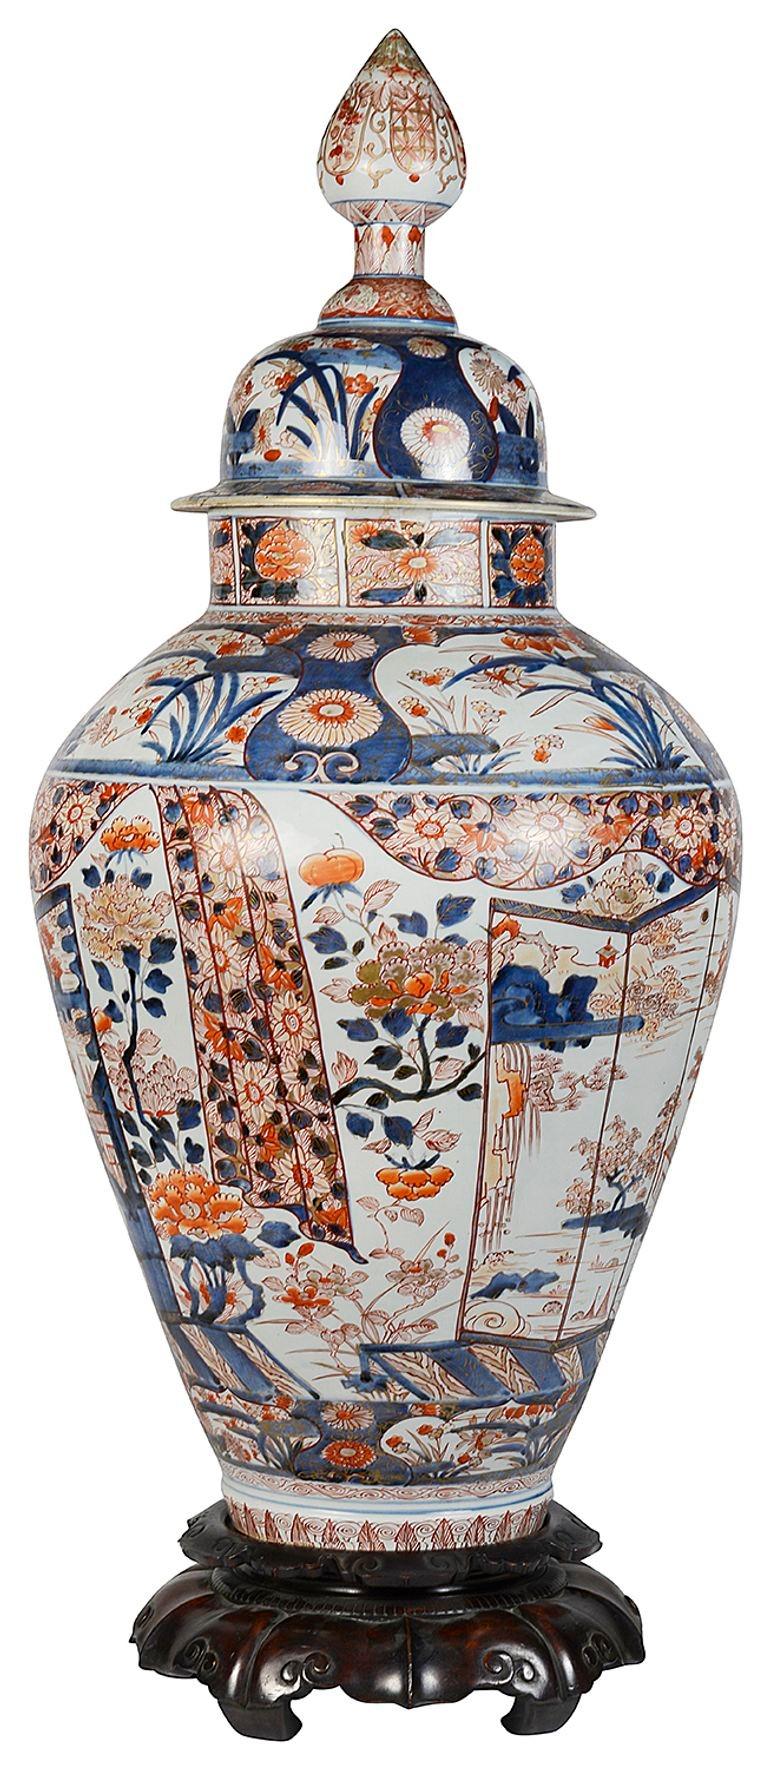 Diese wunderschöne große japanische Arita-Imari-Deckelvase aus dem 18. Jahrhundert steht auf einem Ständer. Mit Bordüren mit klassischen Motiven und Blattwerk, handgemalten Tafeln mit exotischen Pflanzen und Blumen, sowie einem vierfachen Paravent